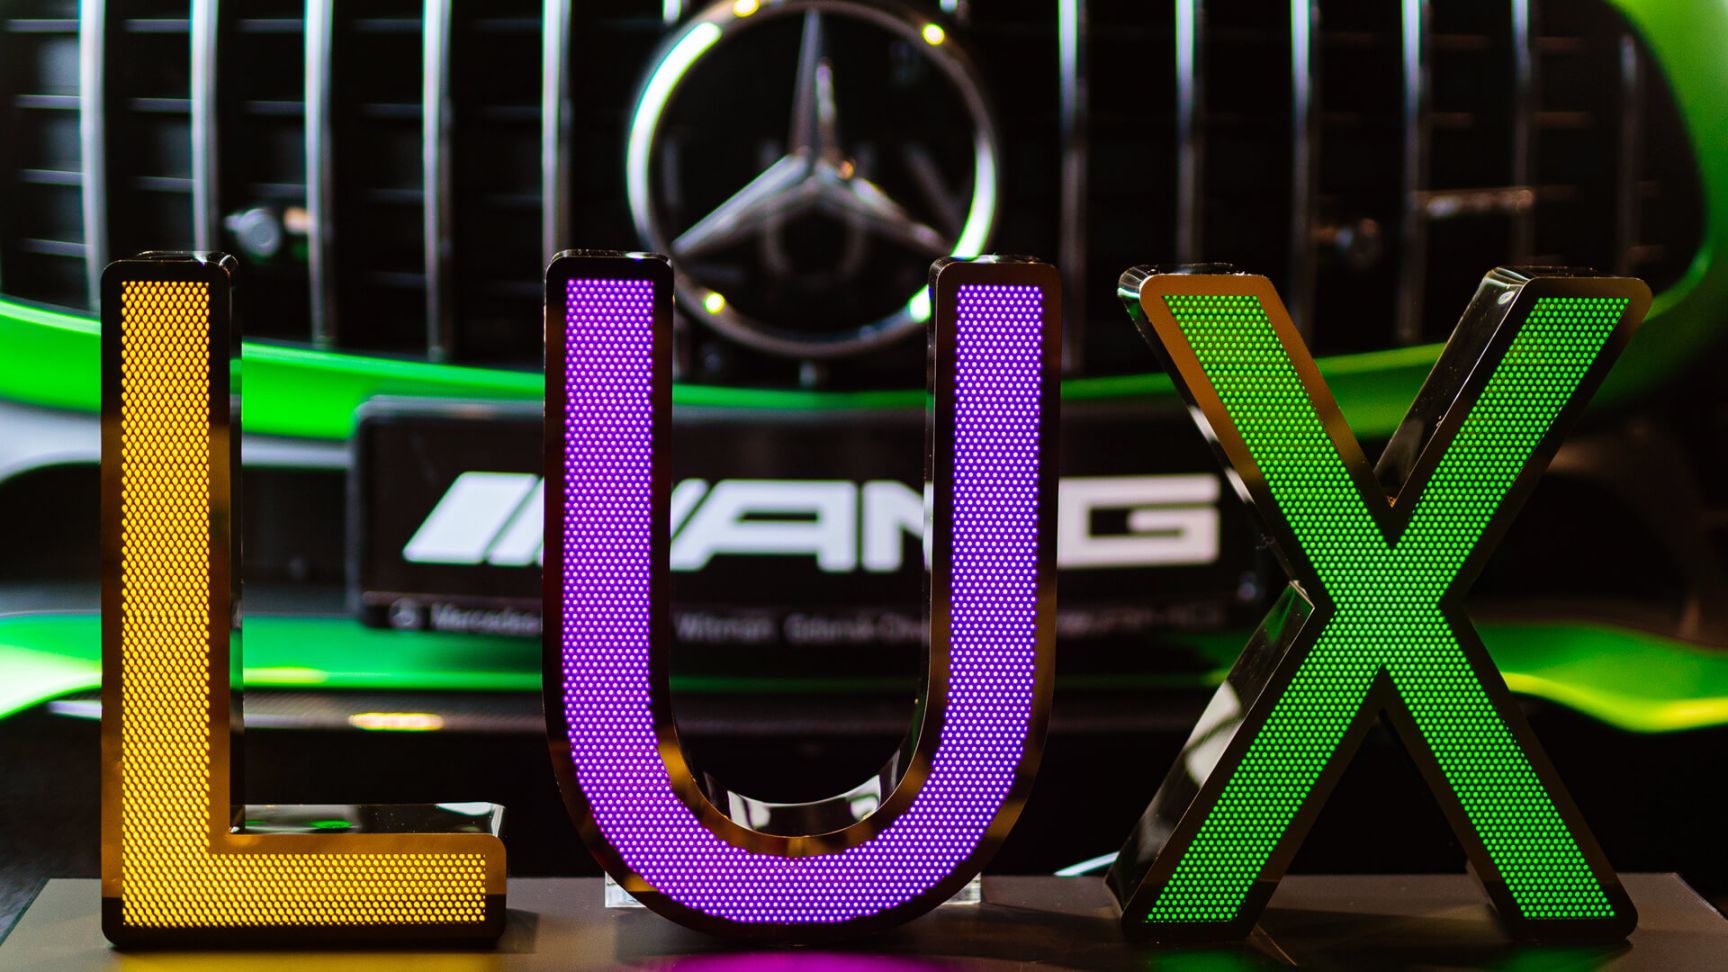 LUX geperforeerde roestvrijstalen letters - LUX belettering in geperforeerd roestvrij staal, verlicht met LED in drie kleuren, op een Mercedes-achtergrond.